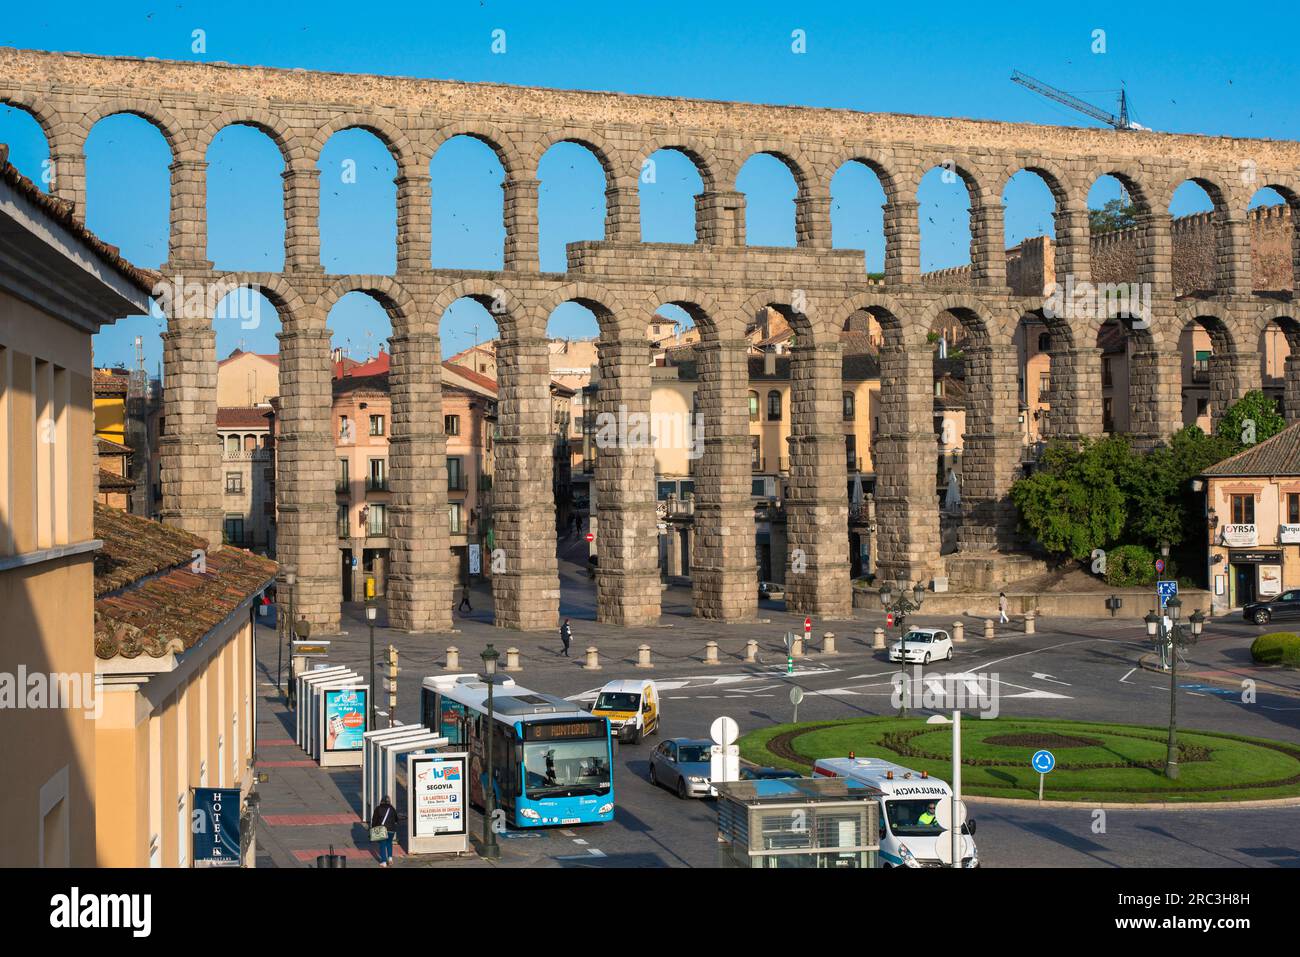 Spanien römische Architektur, Blick auf das Aquädukt aus dem 1. Jahrhundert, das die Stadt Segovia überspannt, und zeigt die Plaza Acueducto Oriental im Vordergrund, Spanien Stockfoto